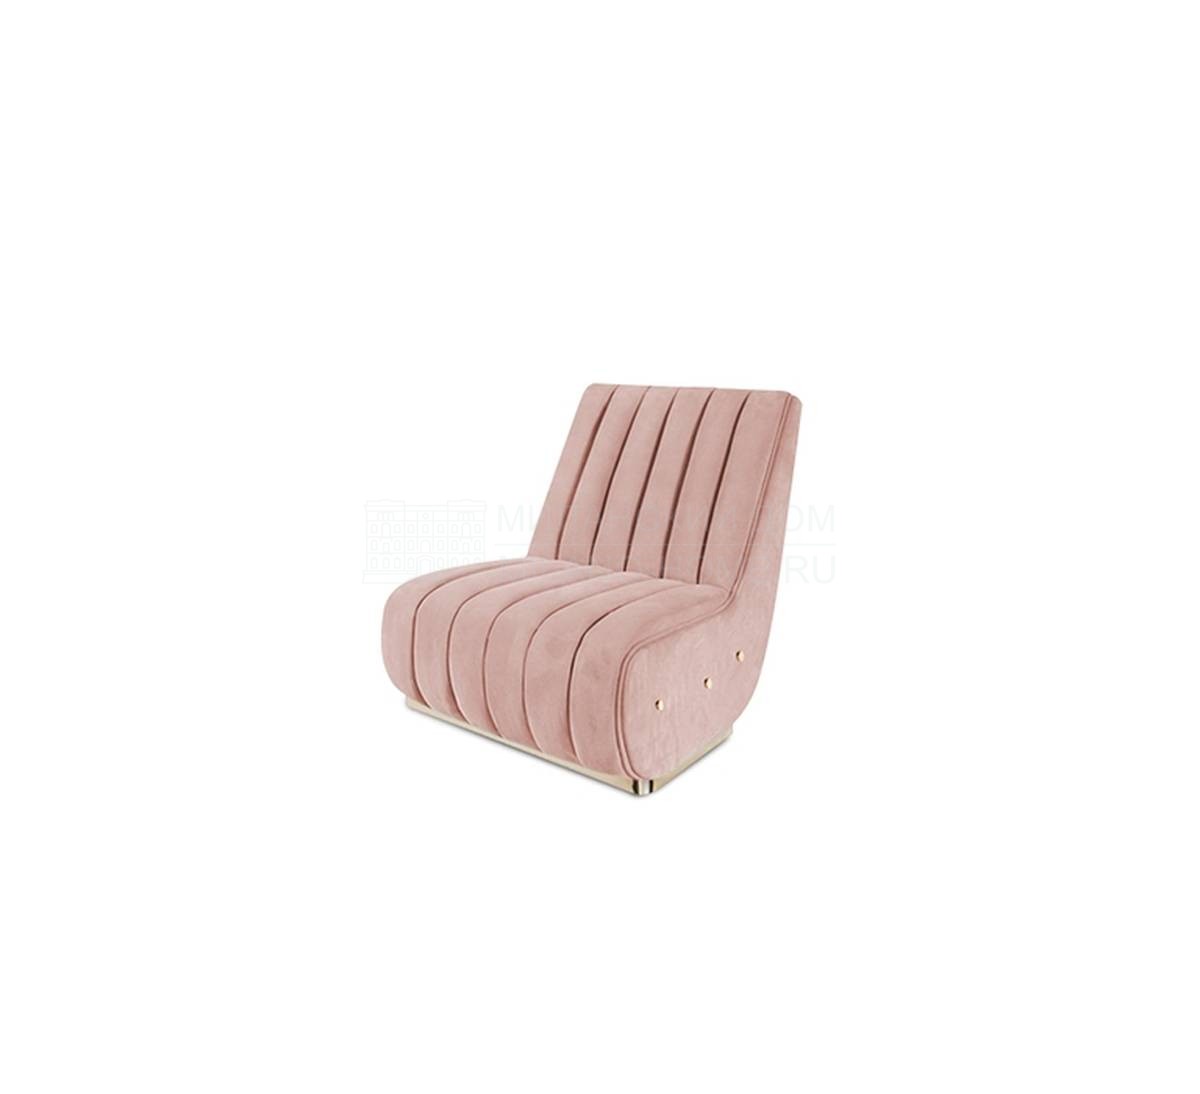 Кресло Sophia/armchair из Португалии фабрики DELIGHTFULL